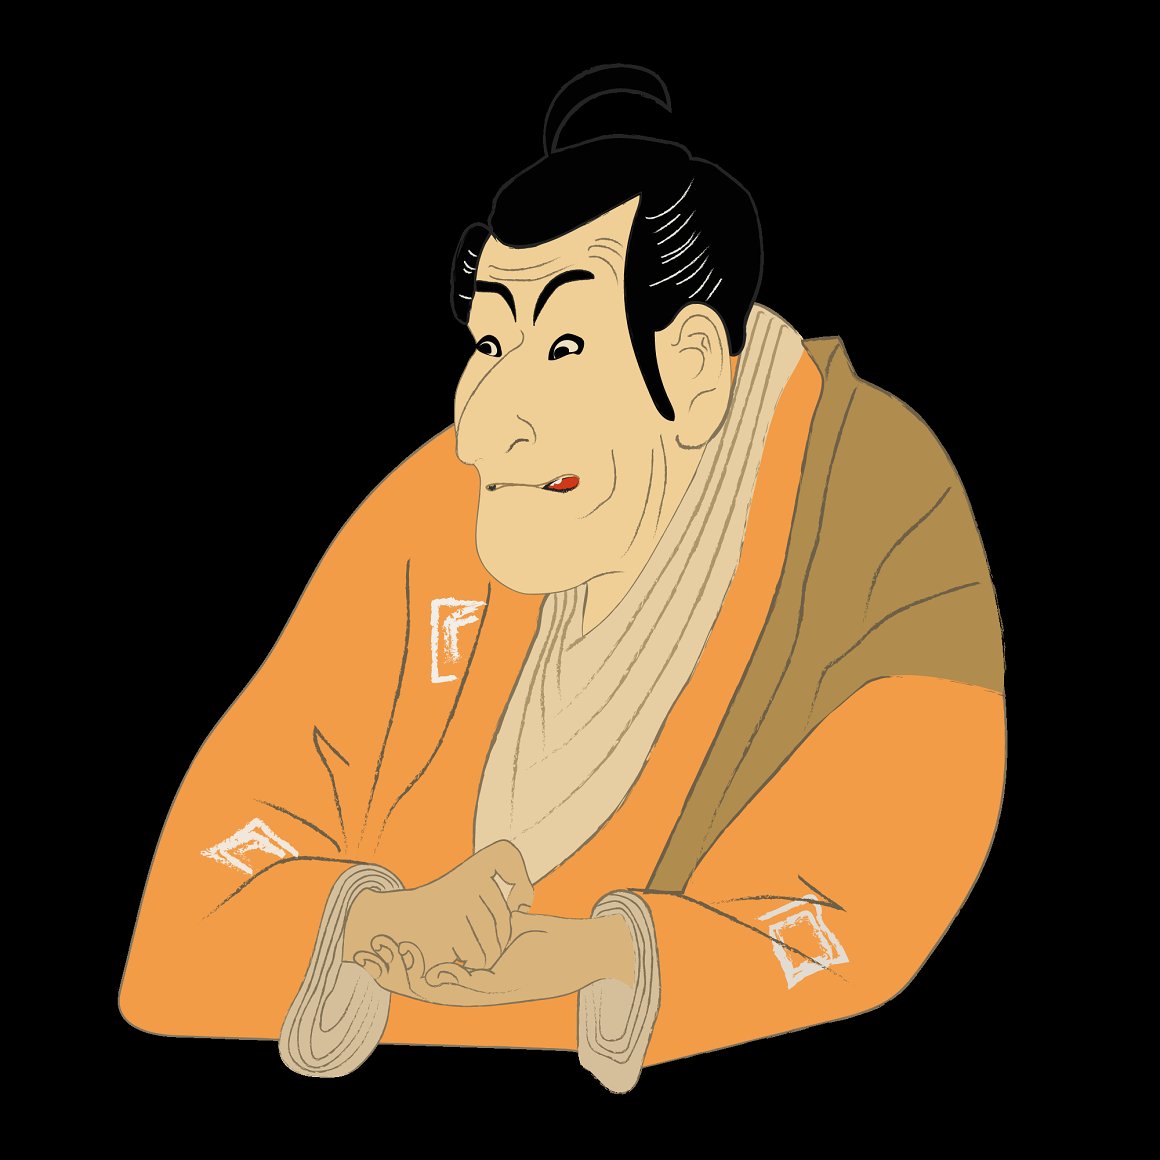 Illustration of a samurai in a kimono on a black background.